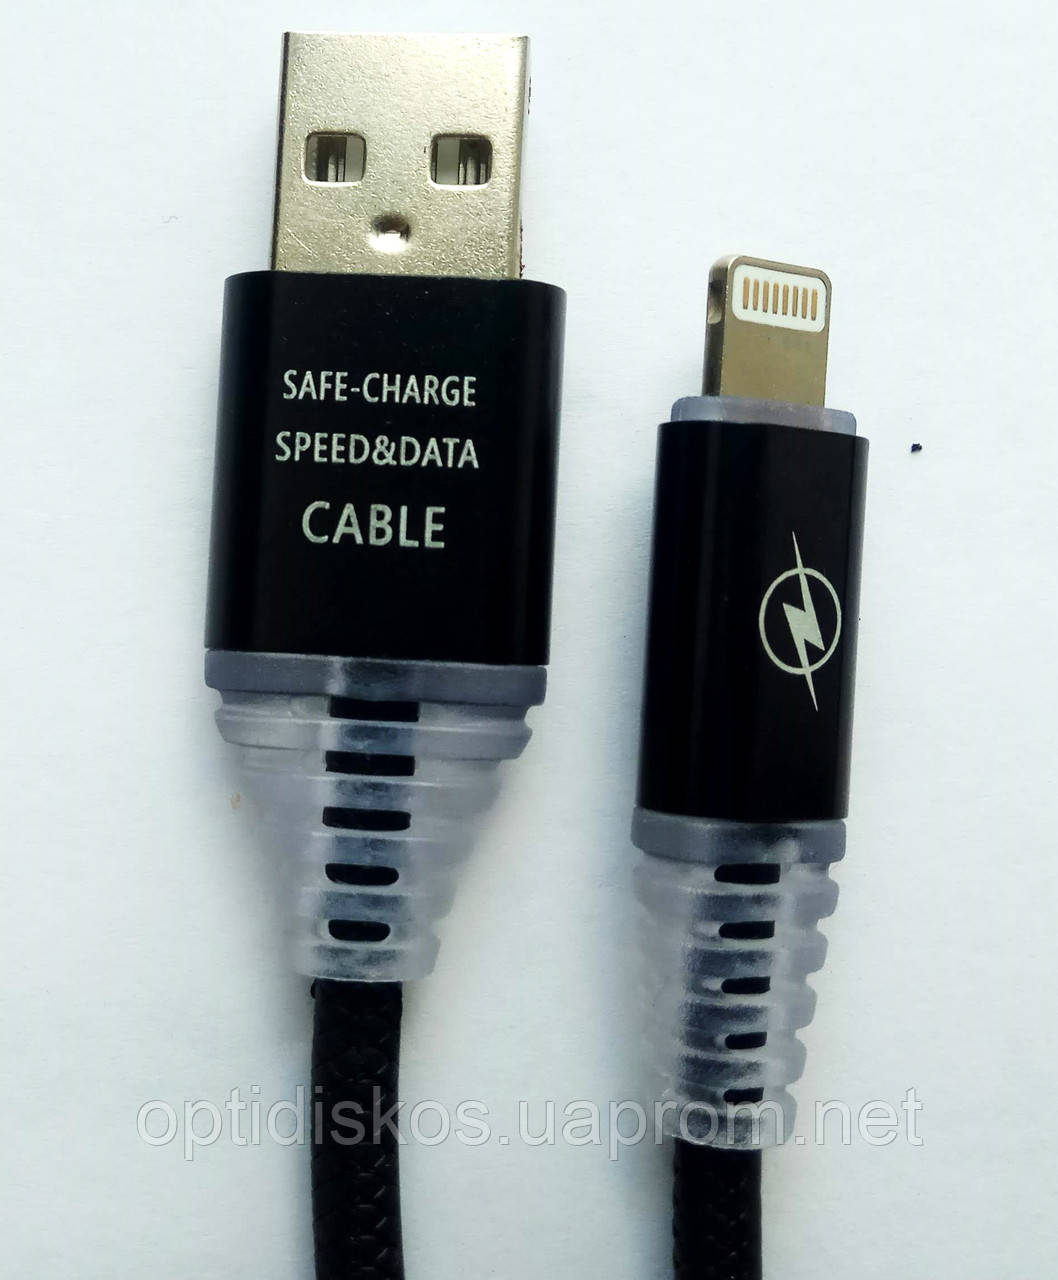 Кабель для зарядки Iphone и передачи данных, USB - Apple lightning, сиНет в наличии